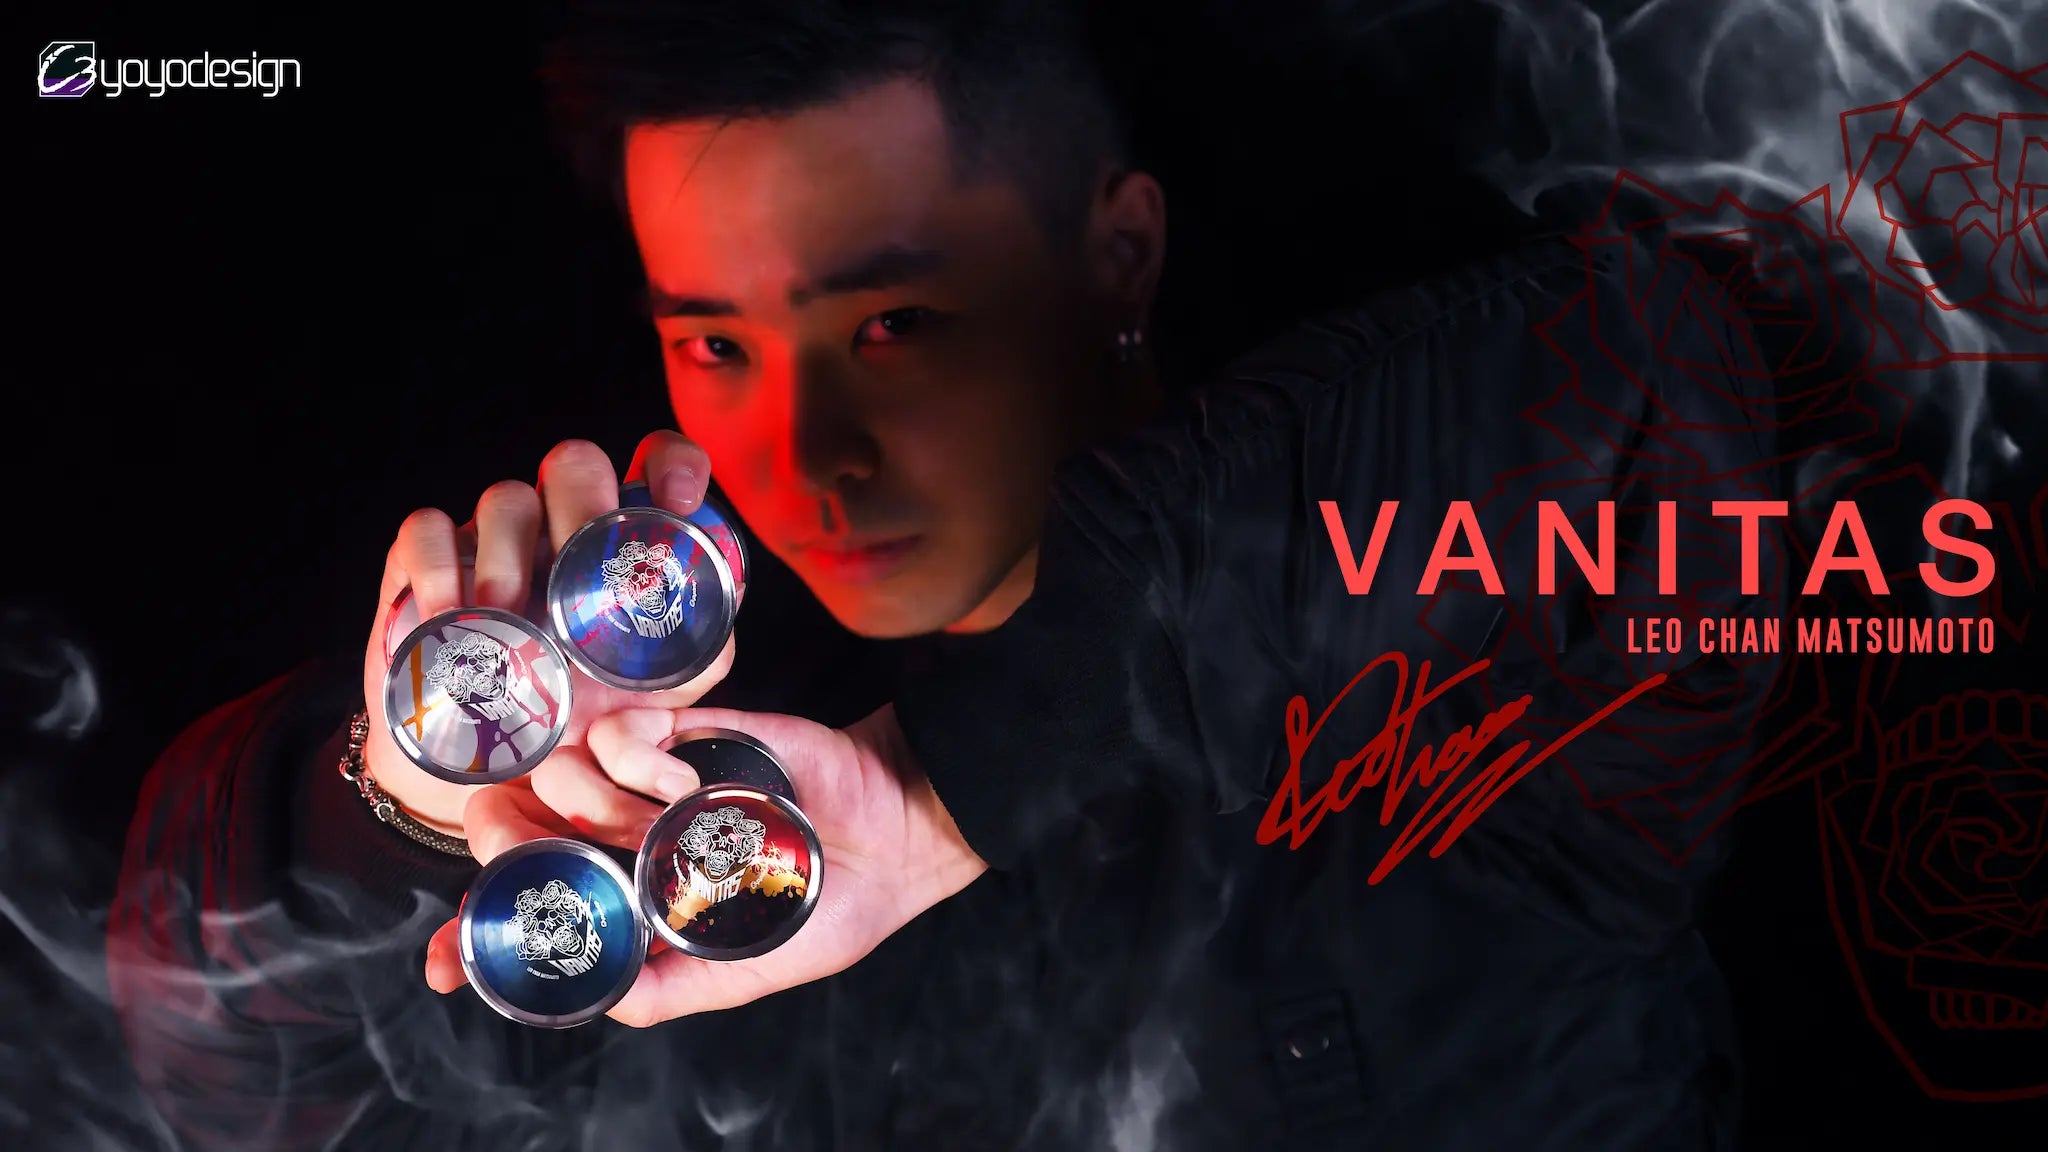 Vanitas (with Leo Matsumoto Photo Card) - C3yoyodesign / YO-YO 